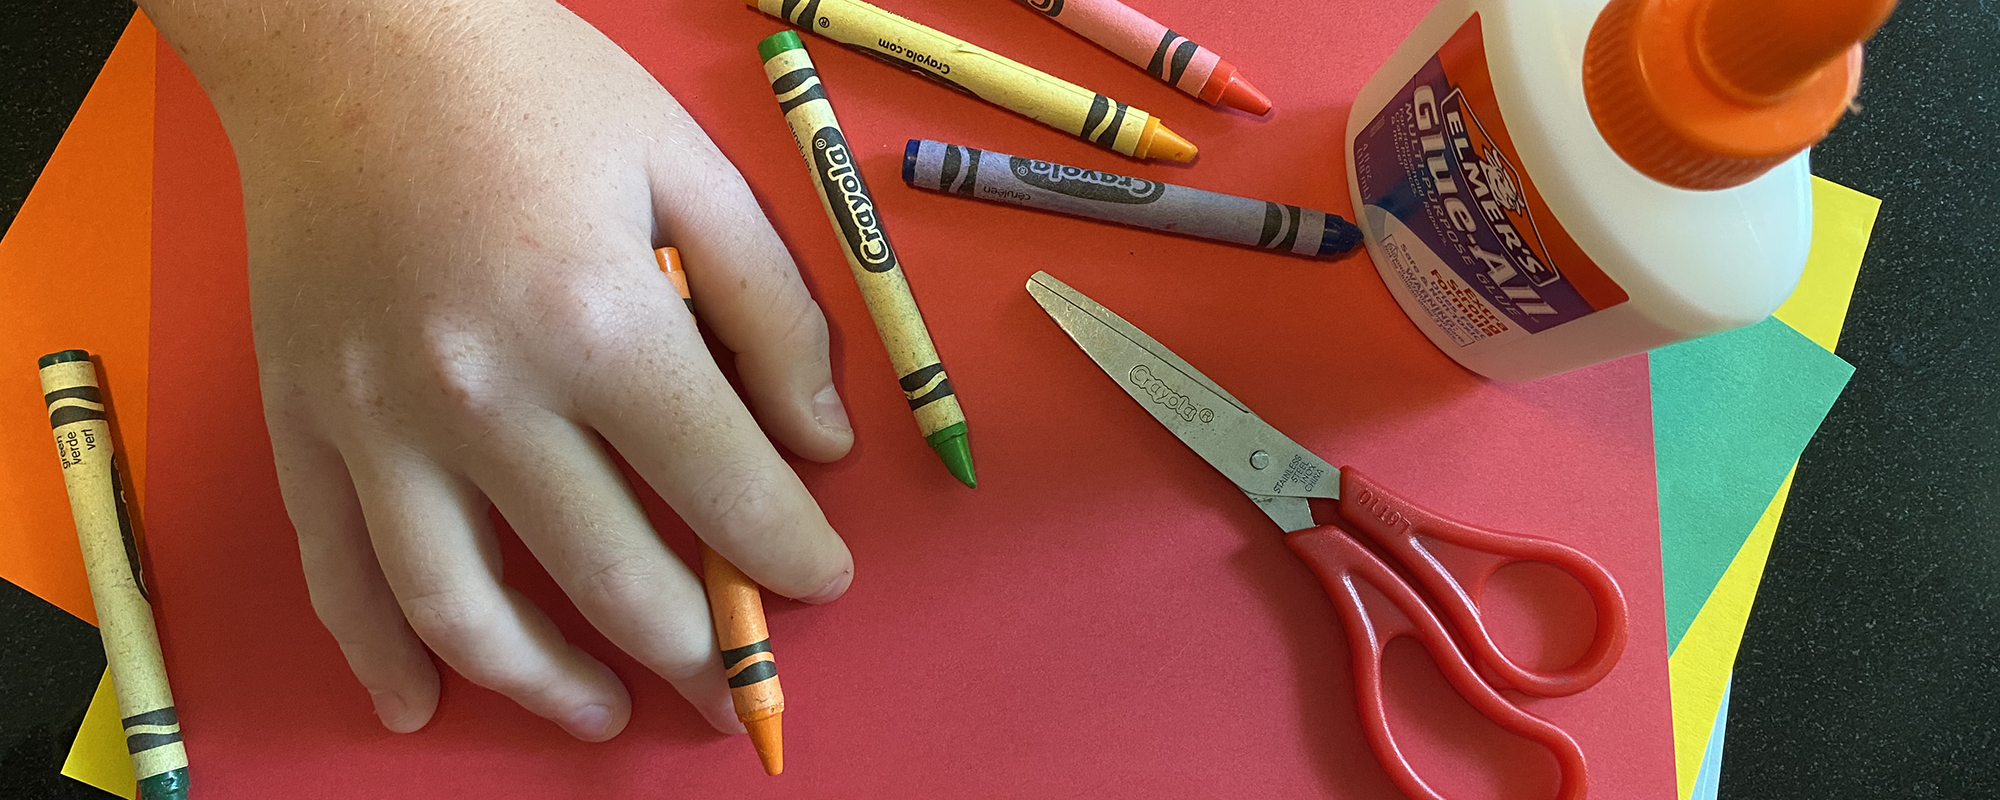 crayons, hands, scissors, glue